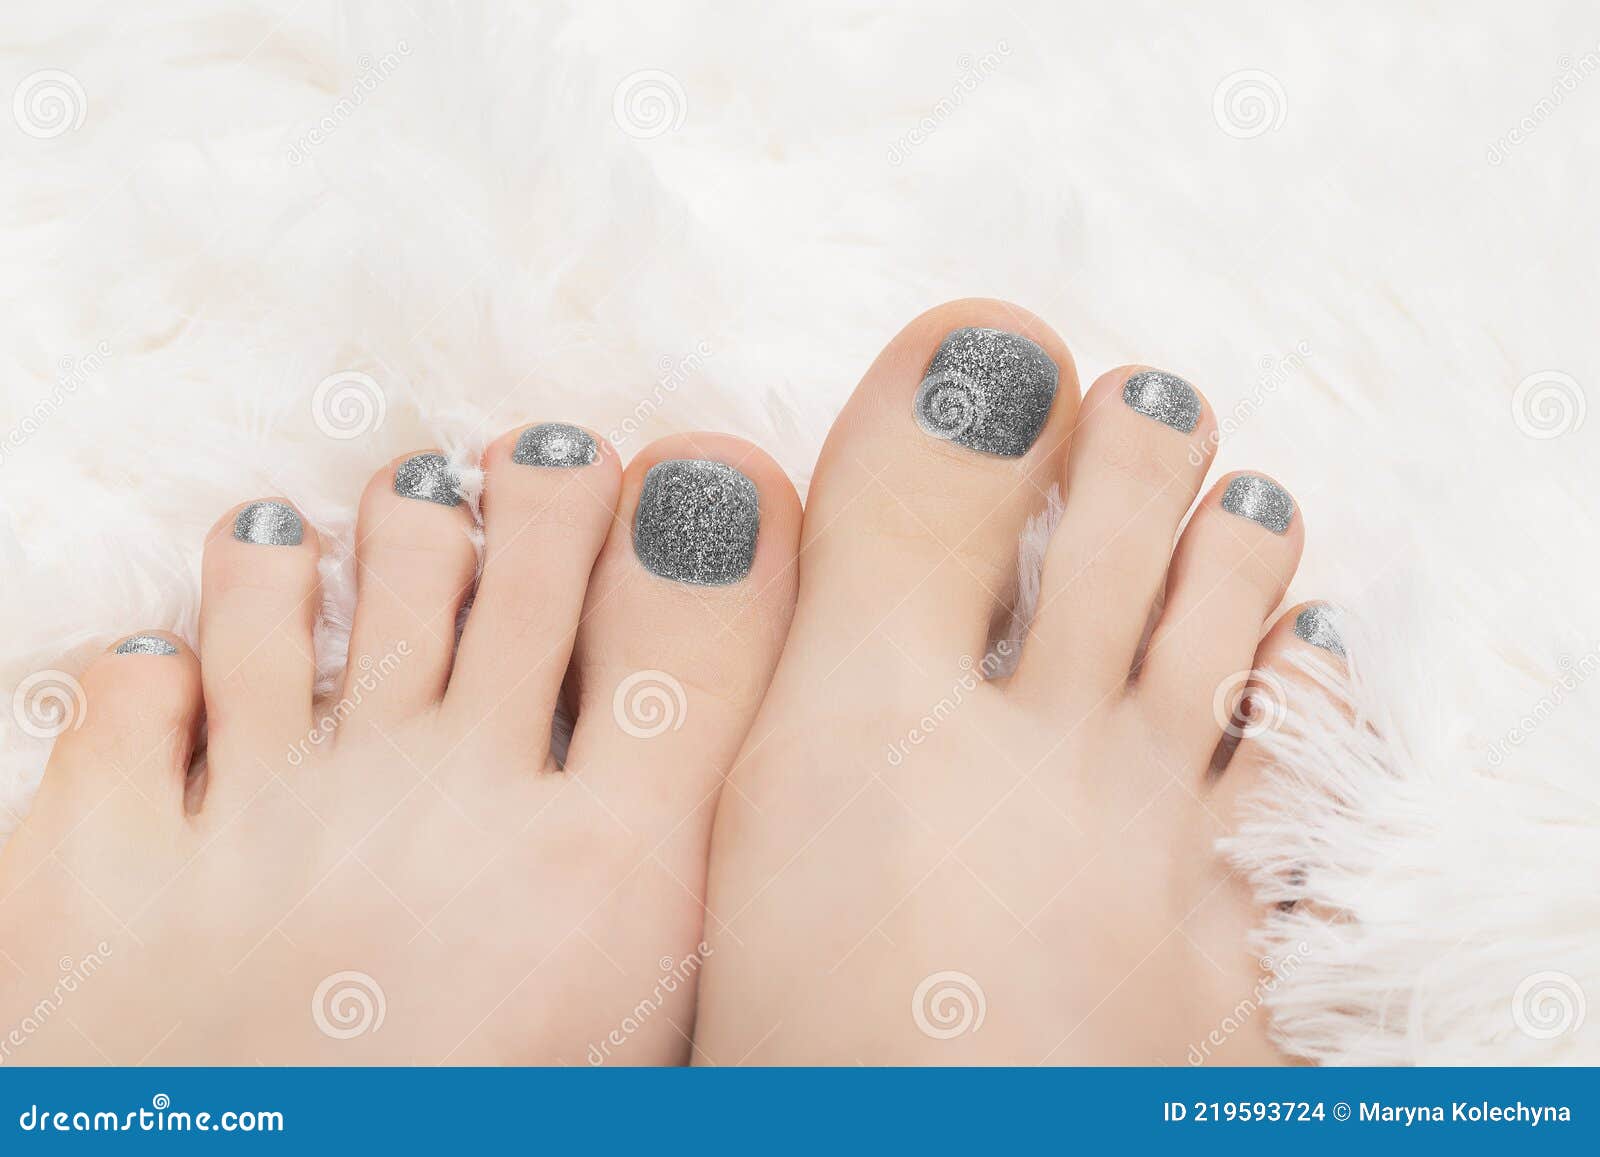 60 Cute & Pretty Toe Nail Art Designs 2022